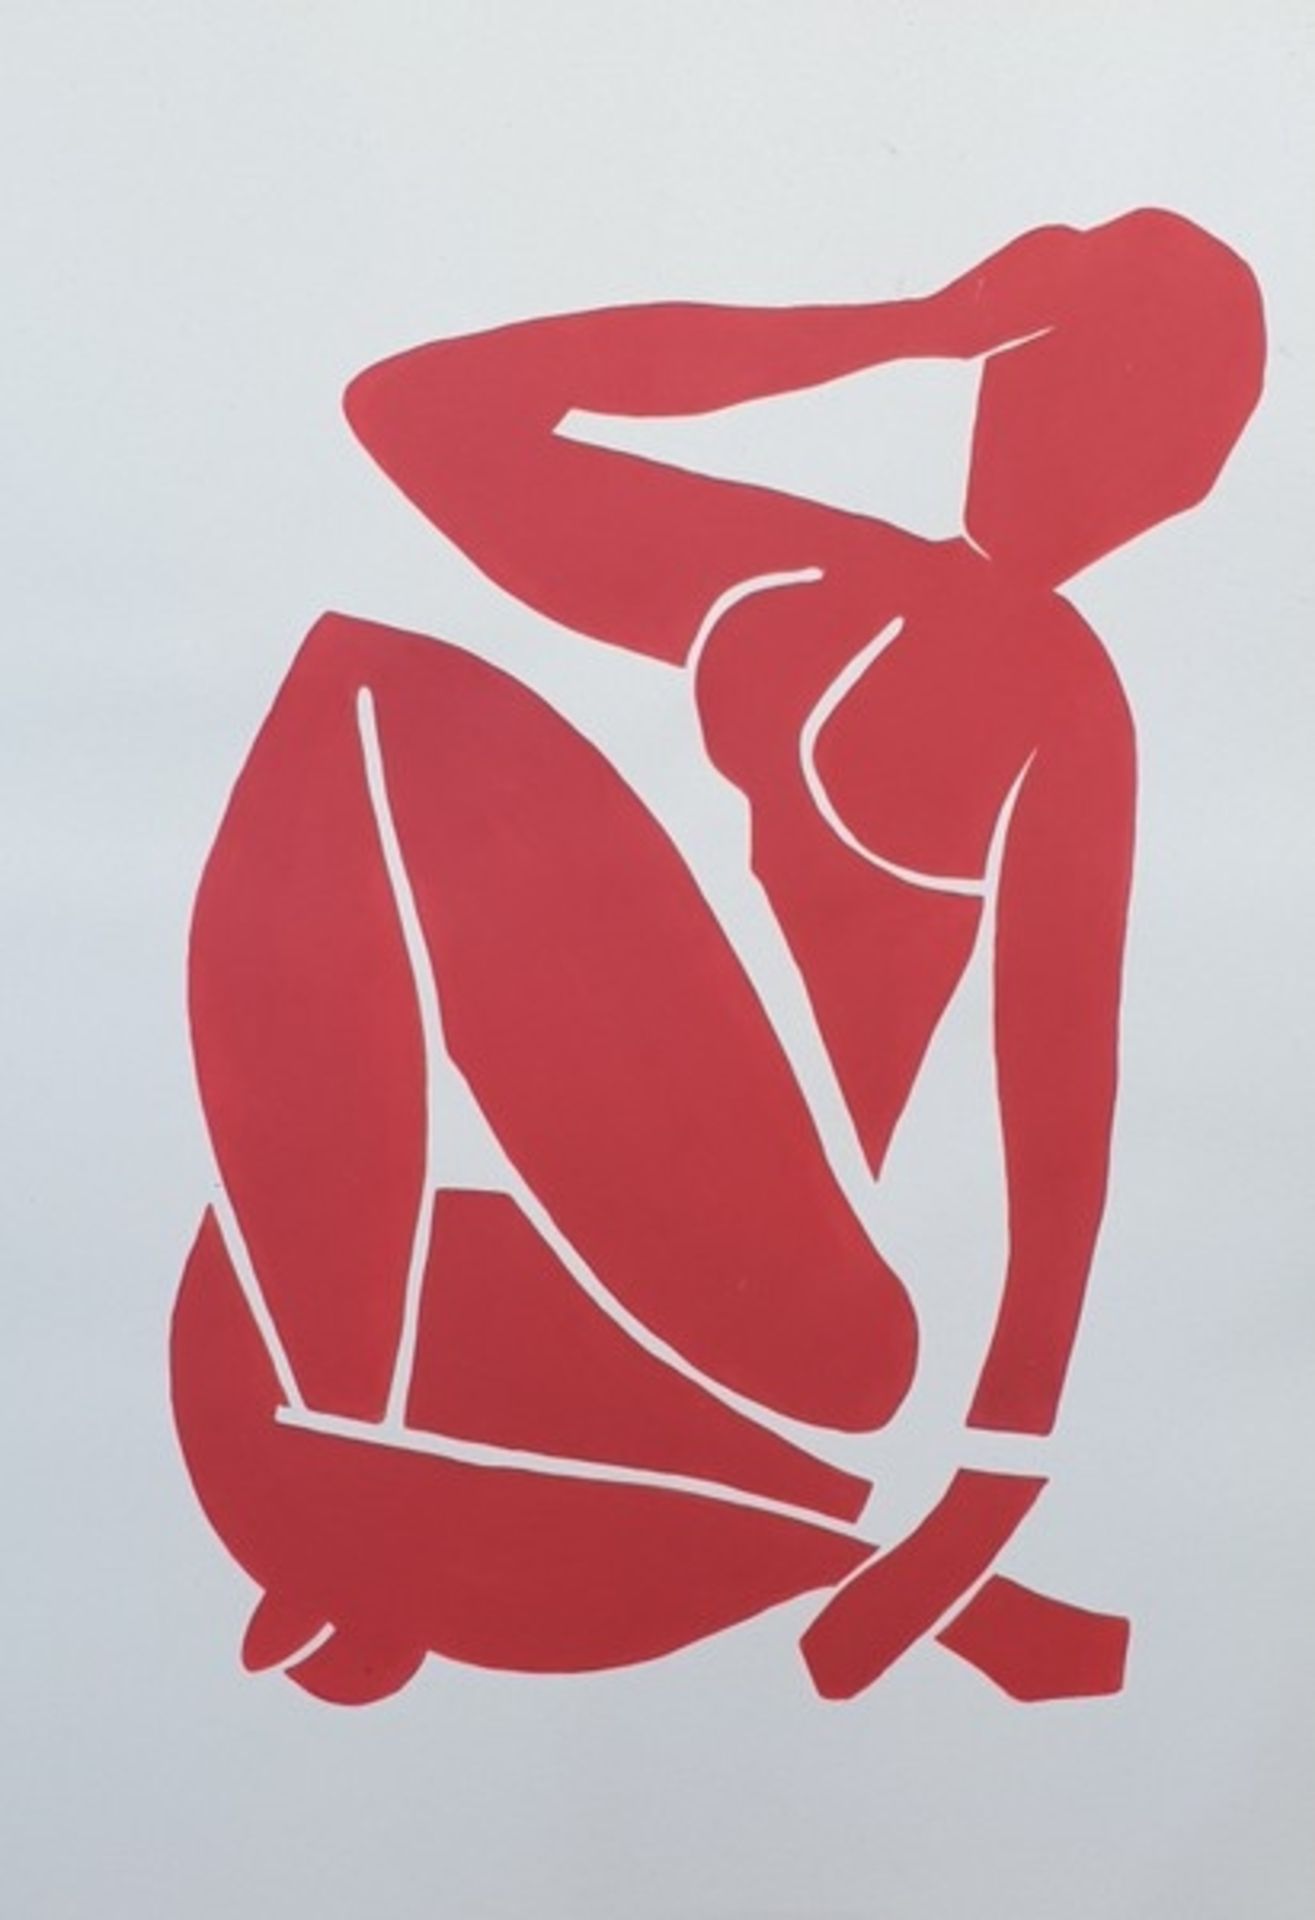 Nach Henri Matisse "Roter Akt" Rote Farbe auf Papier( nach dem Original von 1952), gerahmt,68x48cm